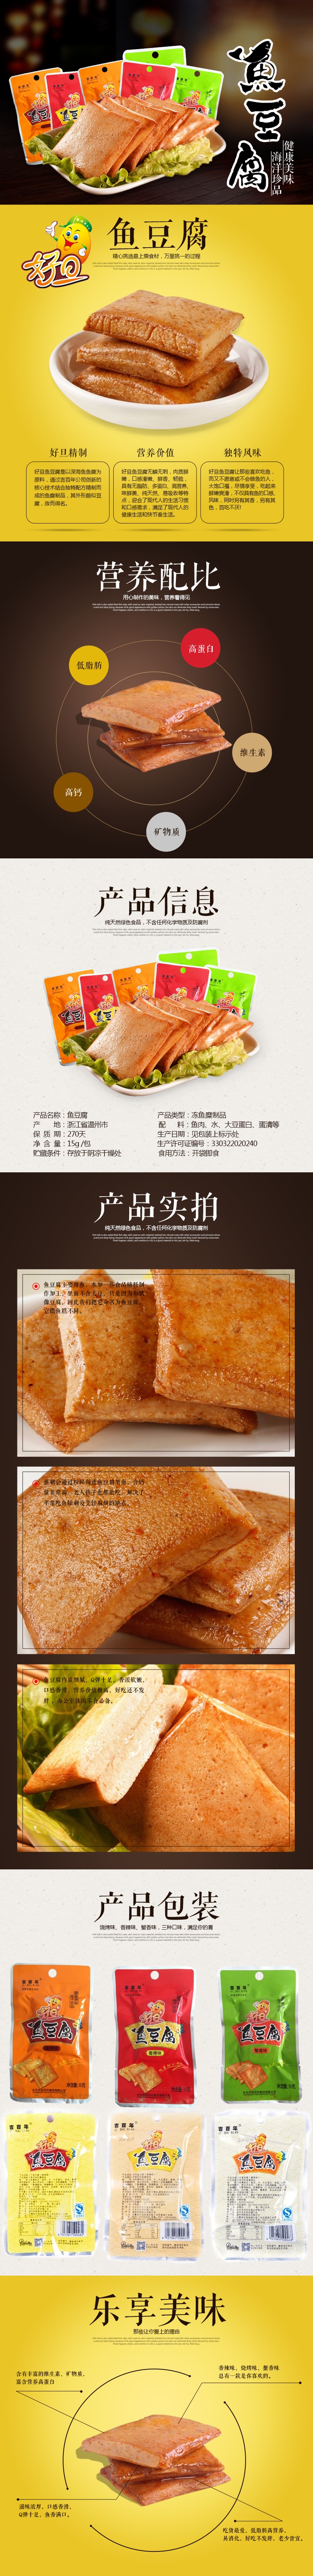 鱼豆腐小食品美味零食详情页PSD模板